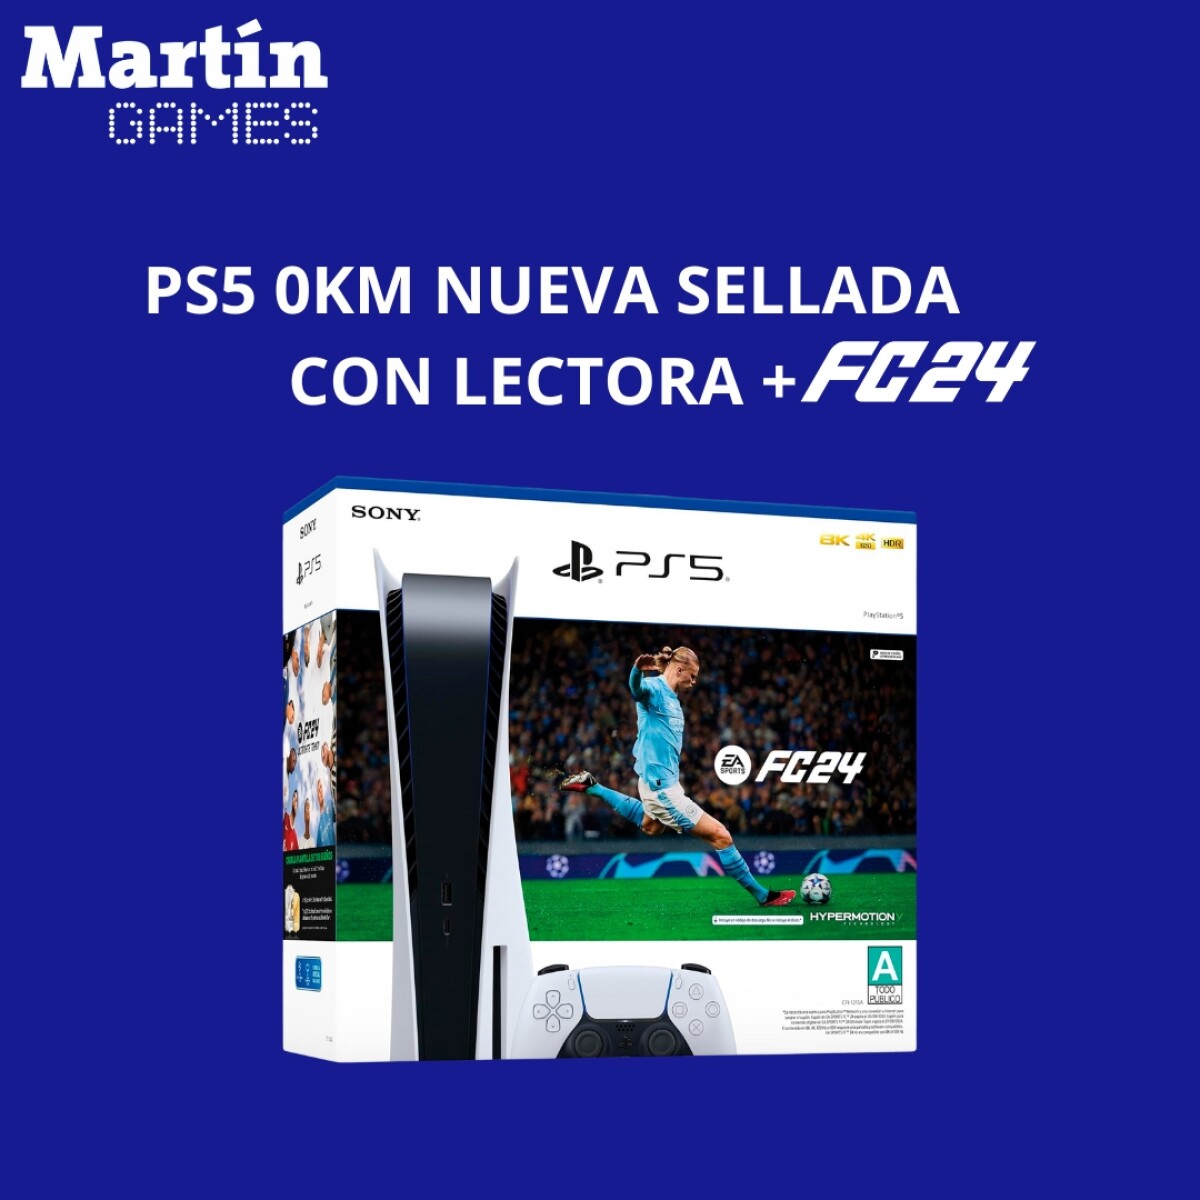 PS5 PLAYSTATION 5 SLIM OKM NUEVA SELLADA CON LECTORA + FC24 